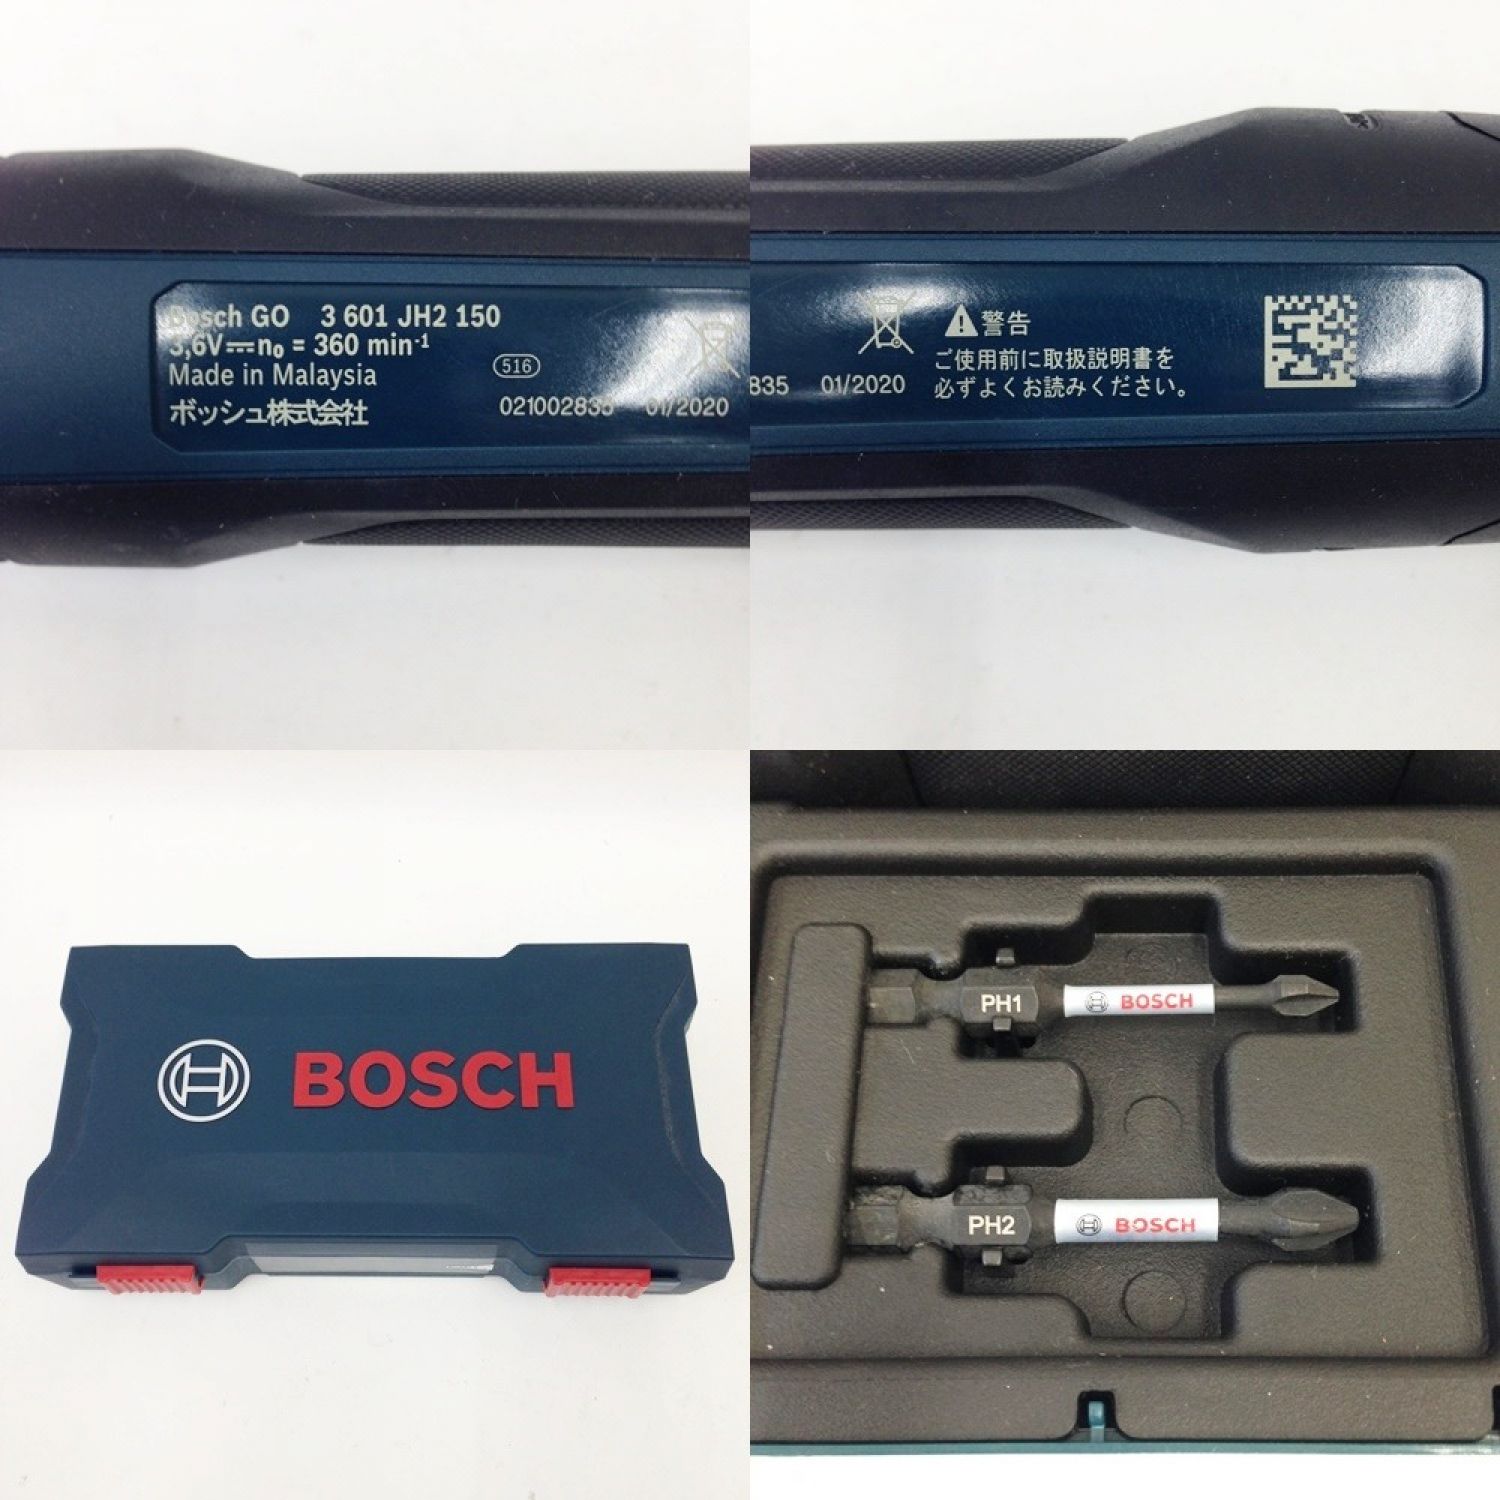 【中古】 BOSCH ボッシュ コードレスドライバー BOSCH GO JH2 150 ブラック x グリーン｜総合リサイクルショップ なんで .